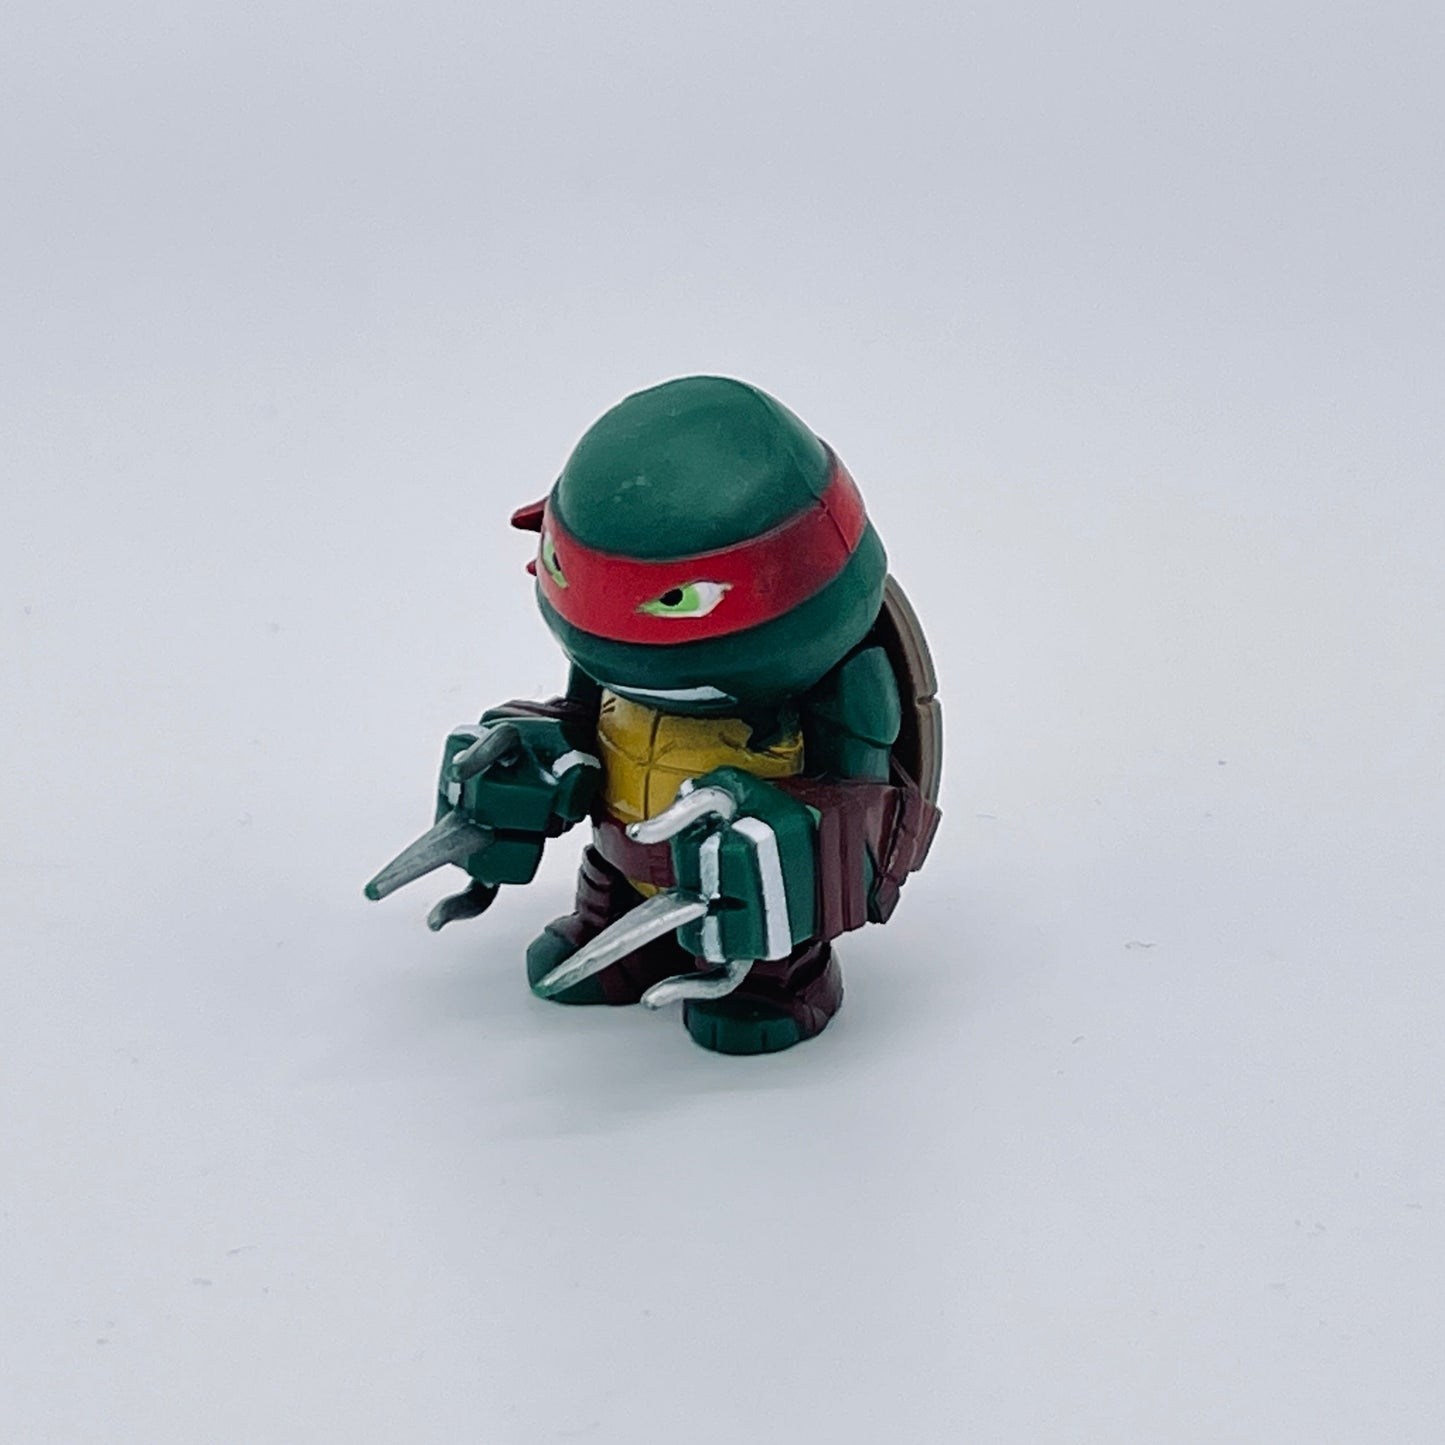 Teenage Mutant Ninja Turtles - Raphael - Minifigure by Viacom (2014) 